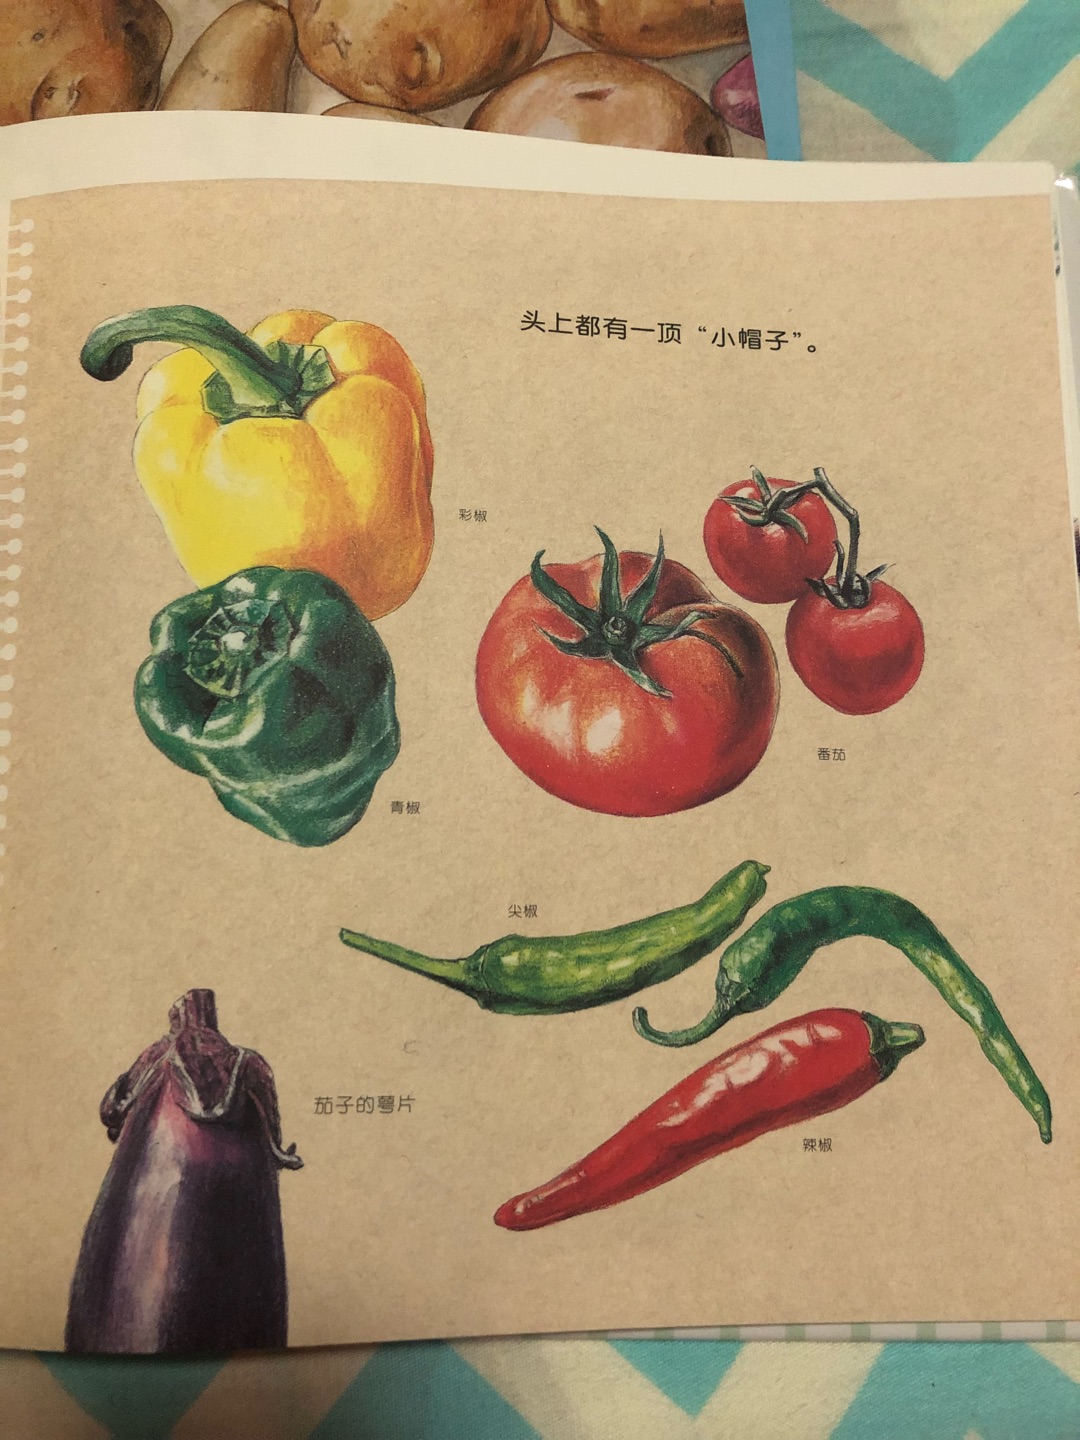 非常好的一本介绍蔬菜的绘本孩子超爱